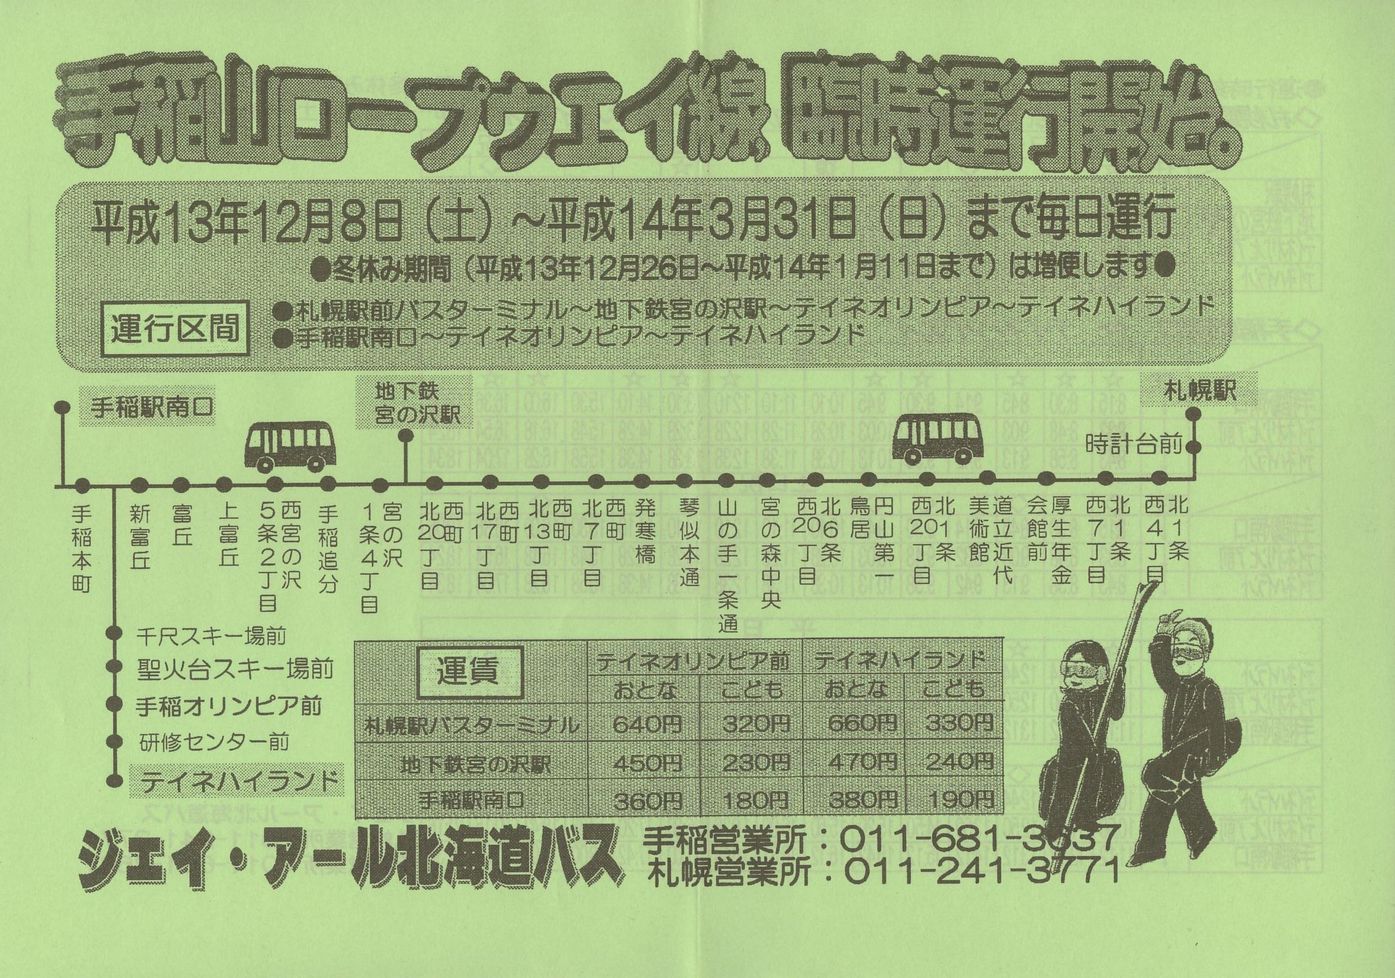 2001-12-08改正_ジェイ・アール北海道バス_手稲山ロープウェイ線チラシ表面